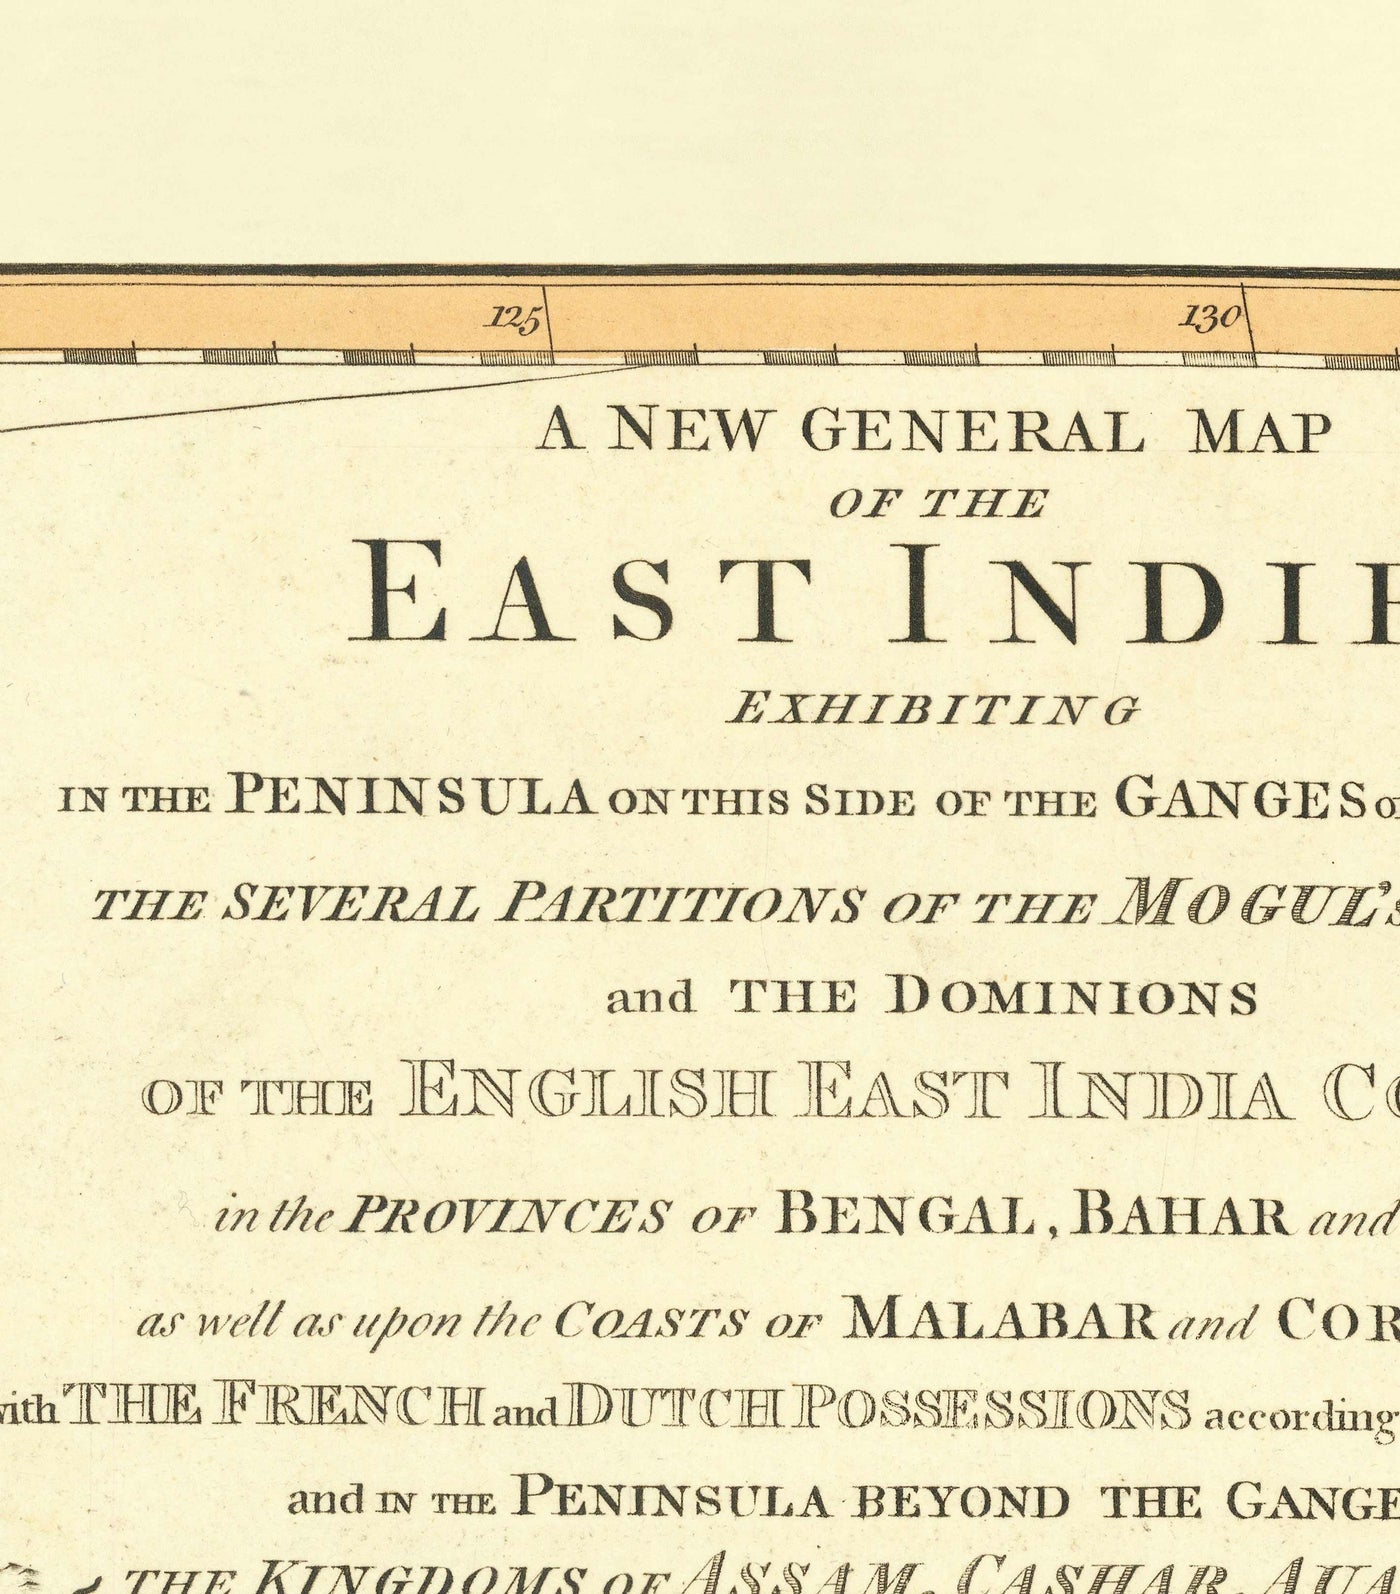 Antiguo mapa de las Indias Orientales, 1794 - India, Indostán, China, Vietnam, Tailandia, Siam, Birmania, Malasia, Vietnam, Pegu